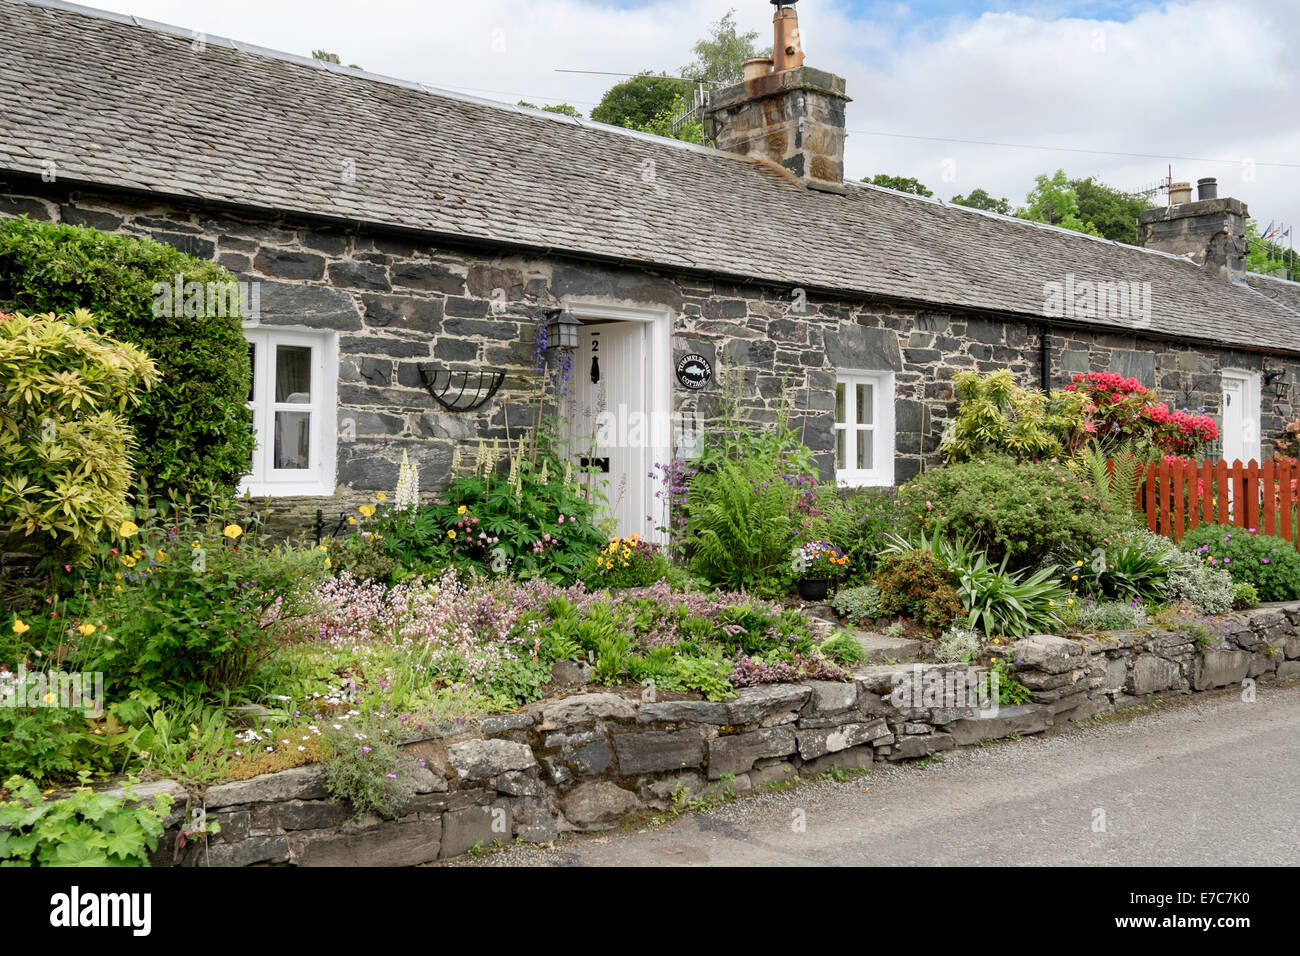 Antiche case a schiera con giardini da cottage in borgo storico. Port-na-Craig Pitlochry Perth and Kinross Scotland Regno Unito Foto Stock